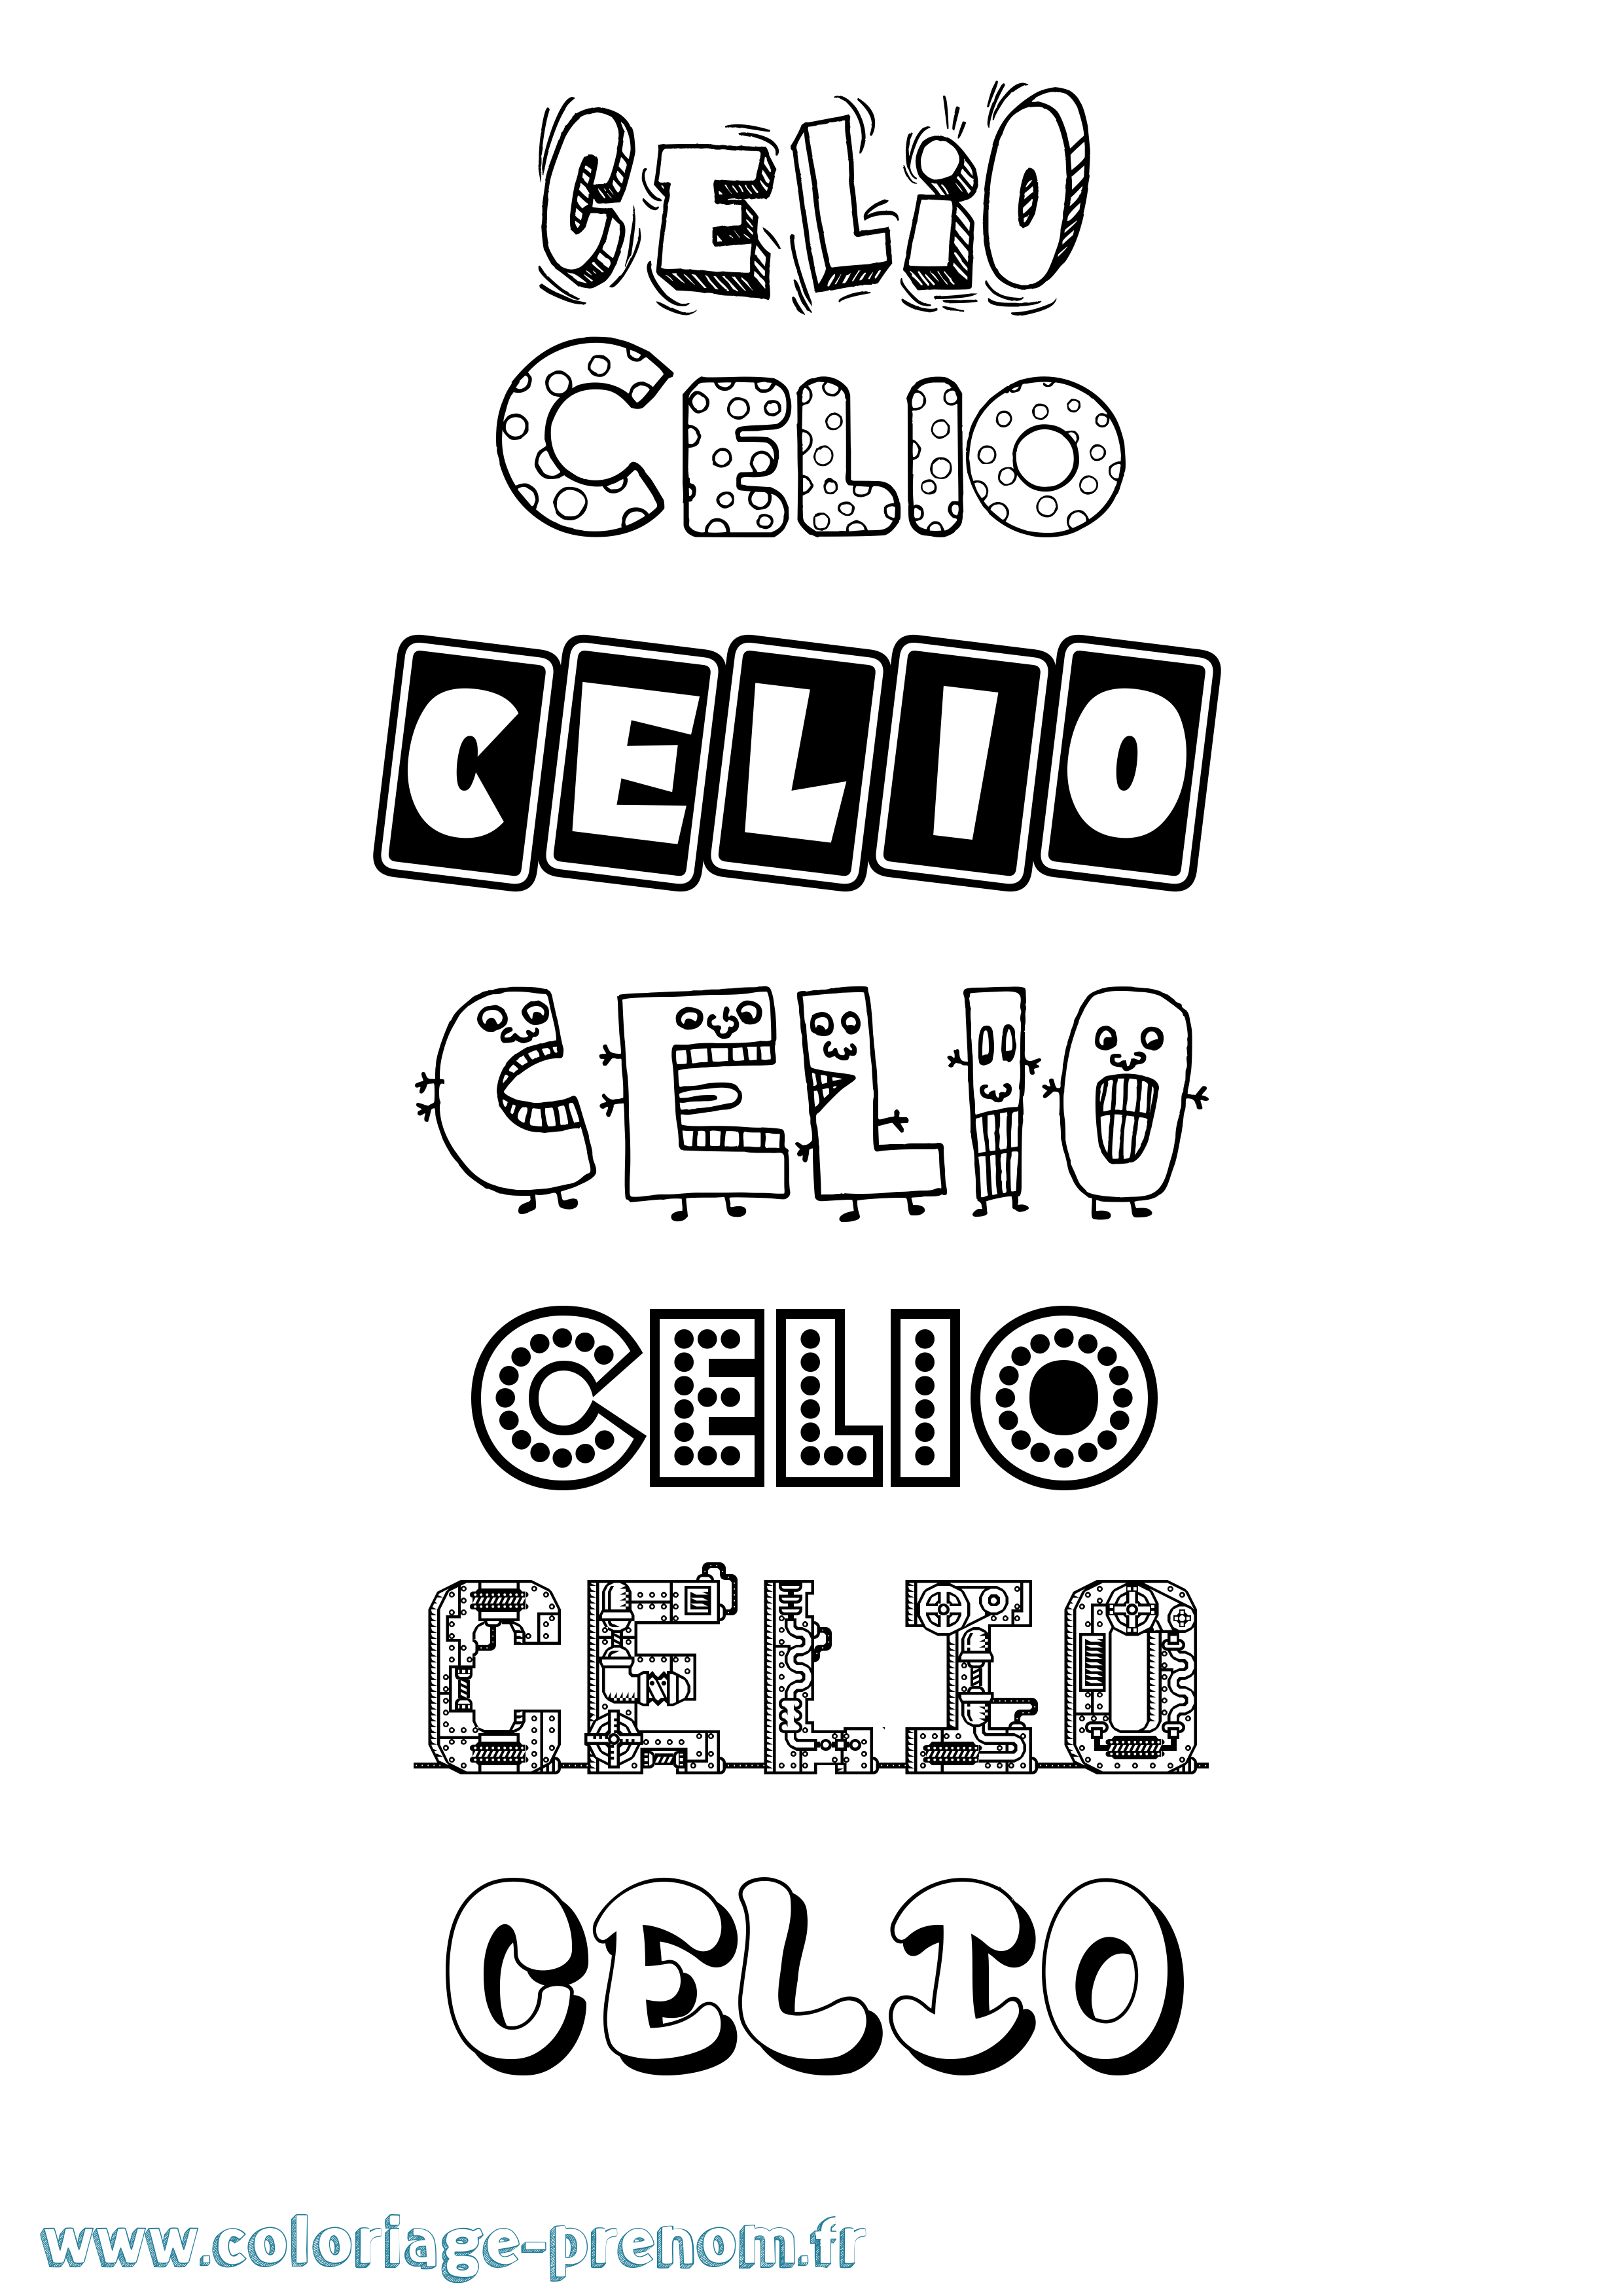 Coloriage prénom Celio Fun